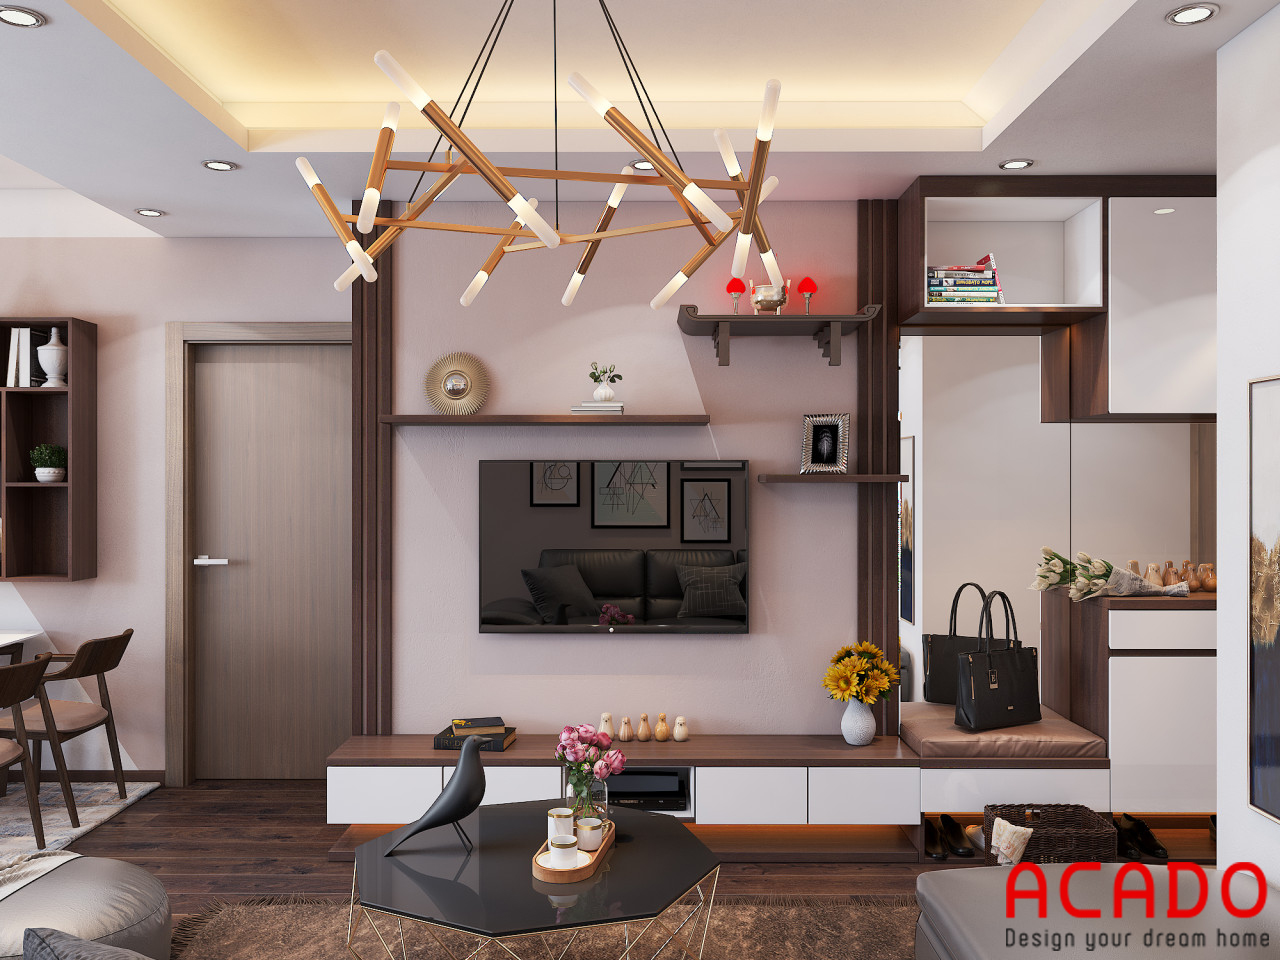 Thiết kế phòng khách với kệ tivi kết hợp tủ trang trí hiện đại, trẻ trung - thiết kế nội thất chung cư 80m2